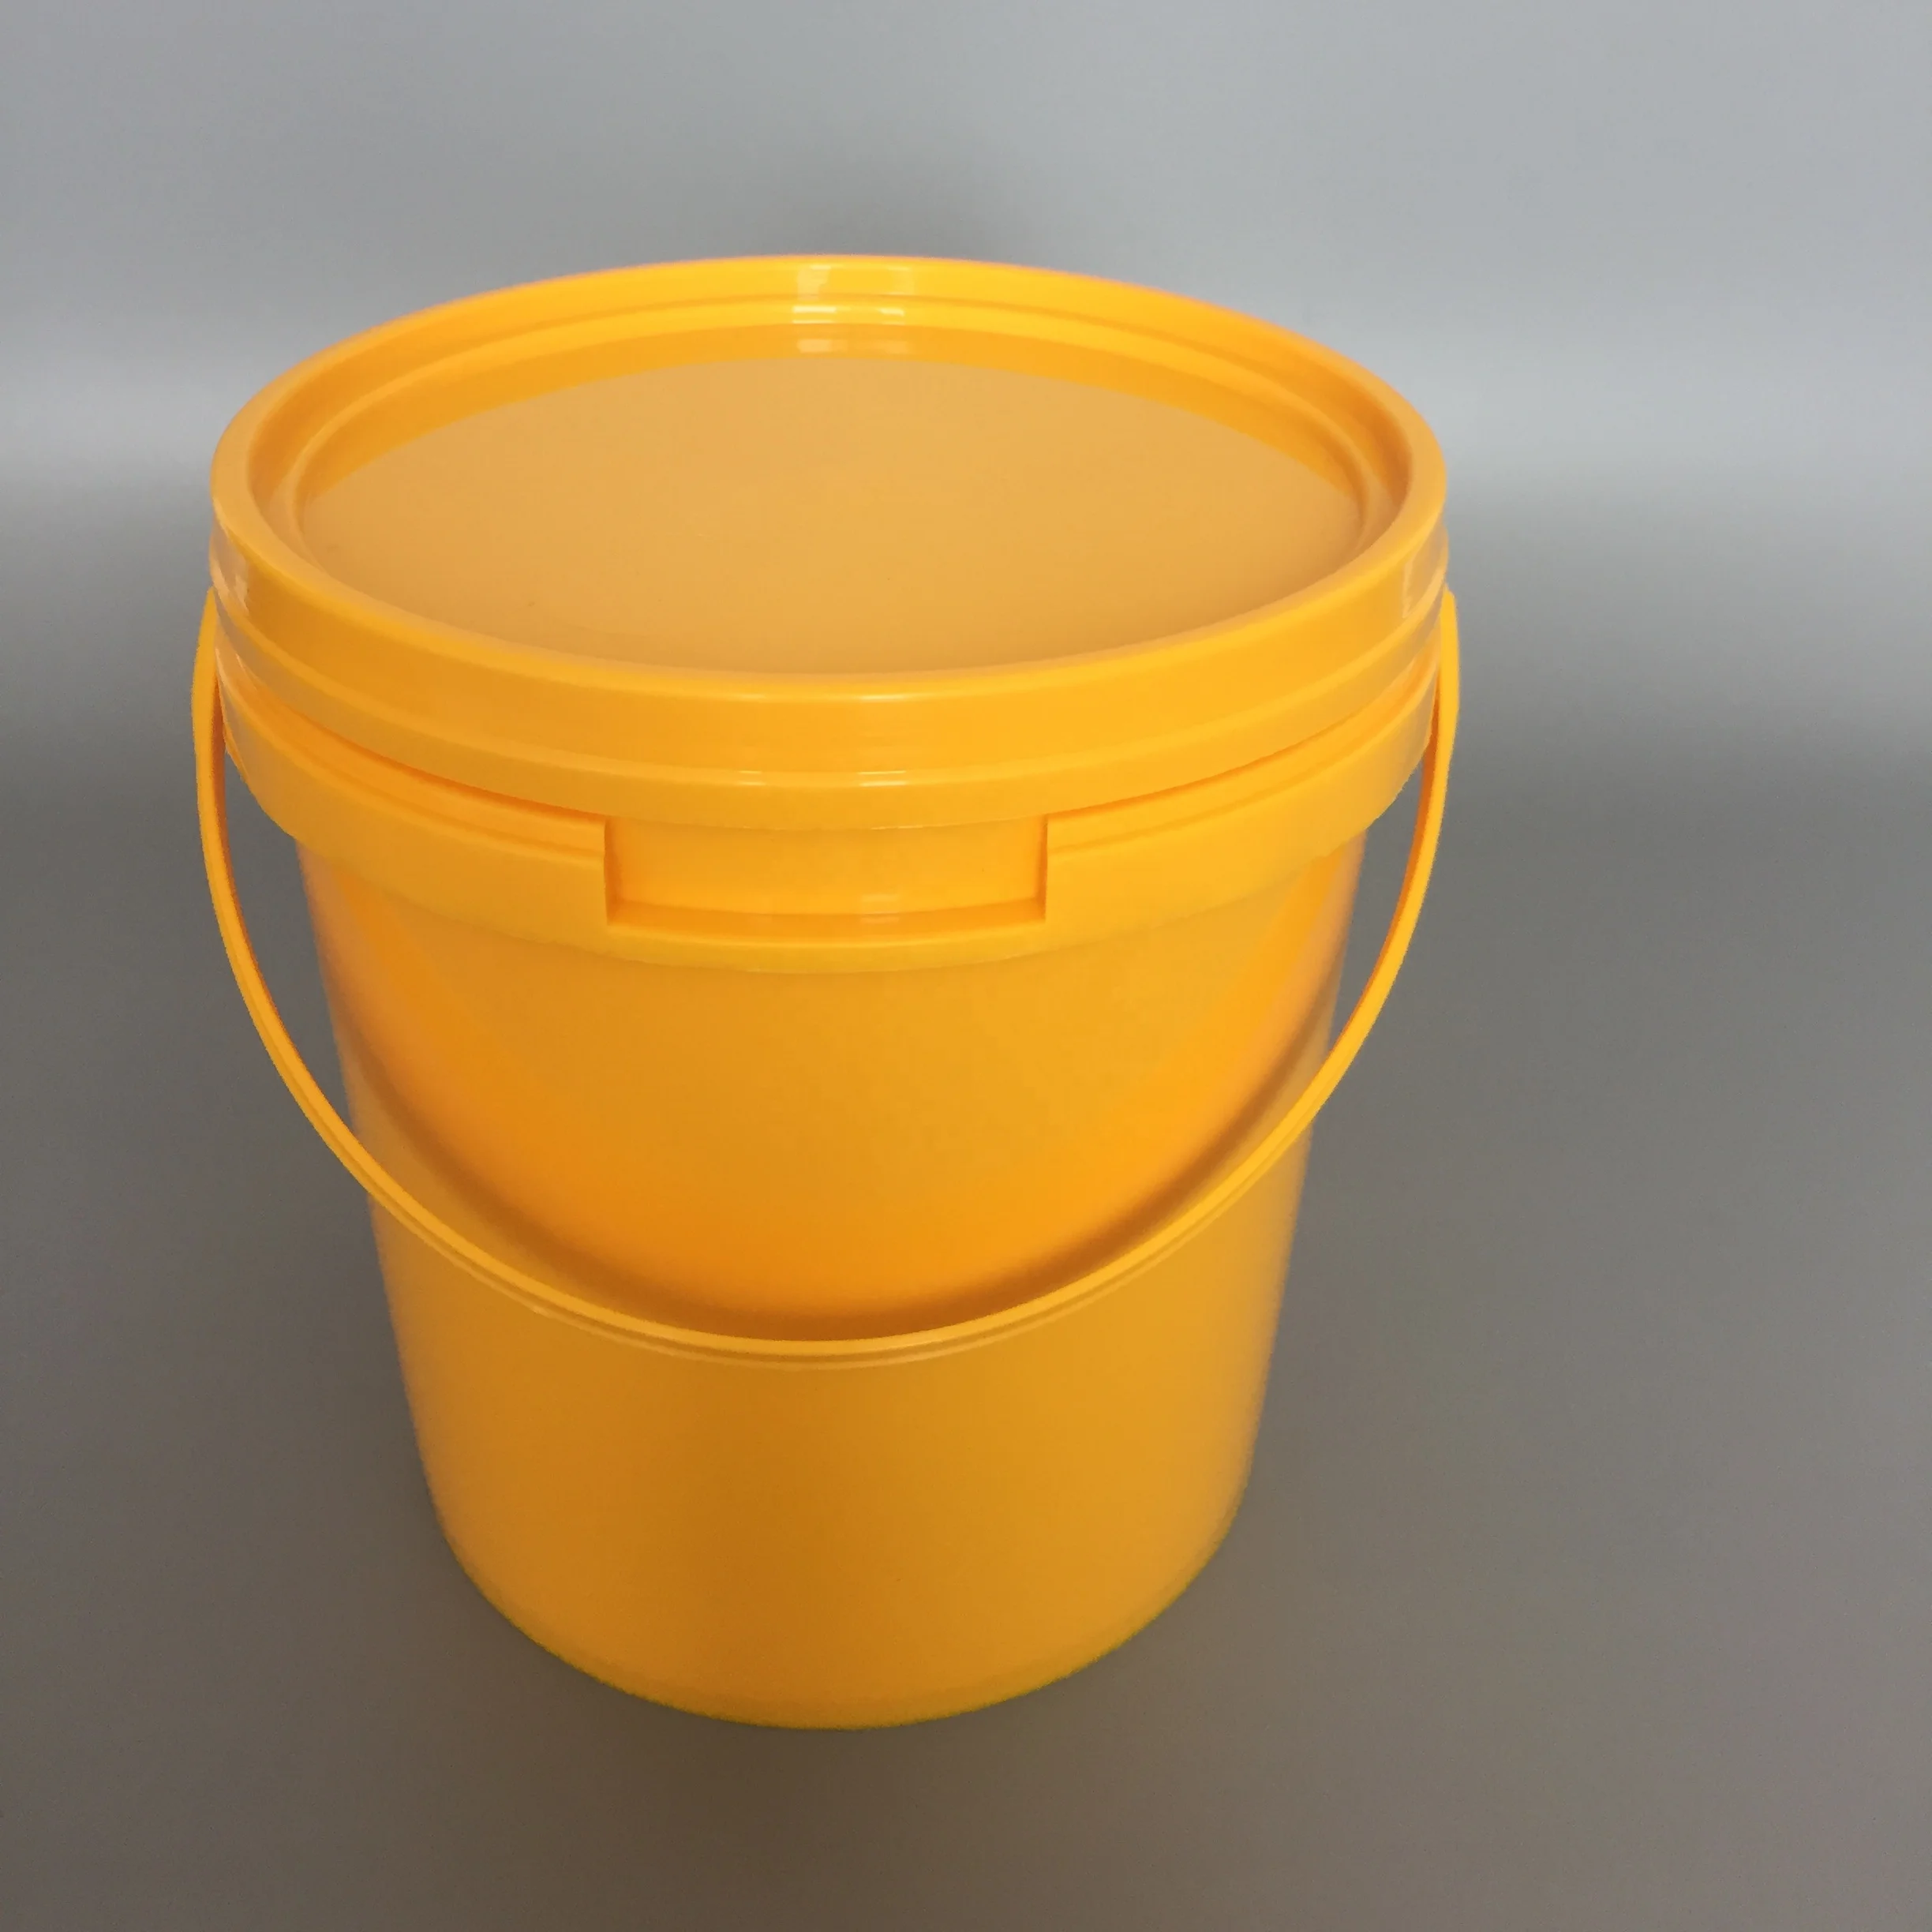 Ёмкость для сбора медицинских отходов класса б 150 литроа. Ведро с крышкой (желтый). Ведро пластиковое желтое. Ведро пластиковое с крышкой желтое.